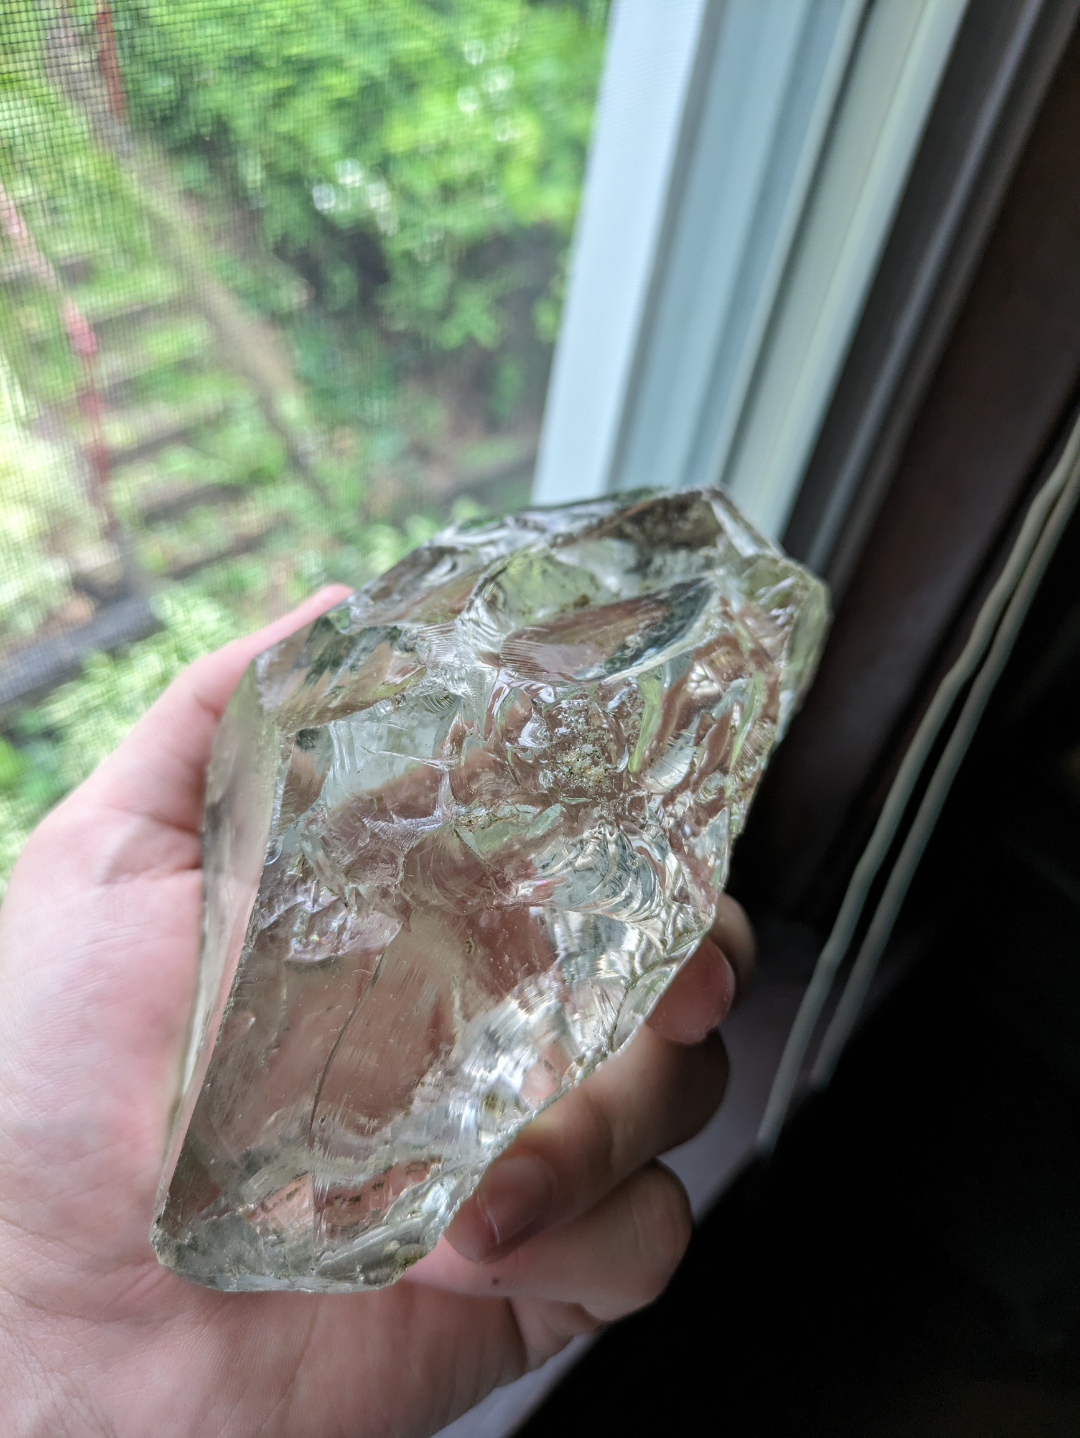 r/mildlyinteresting - This Glass I Found In My Pond